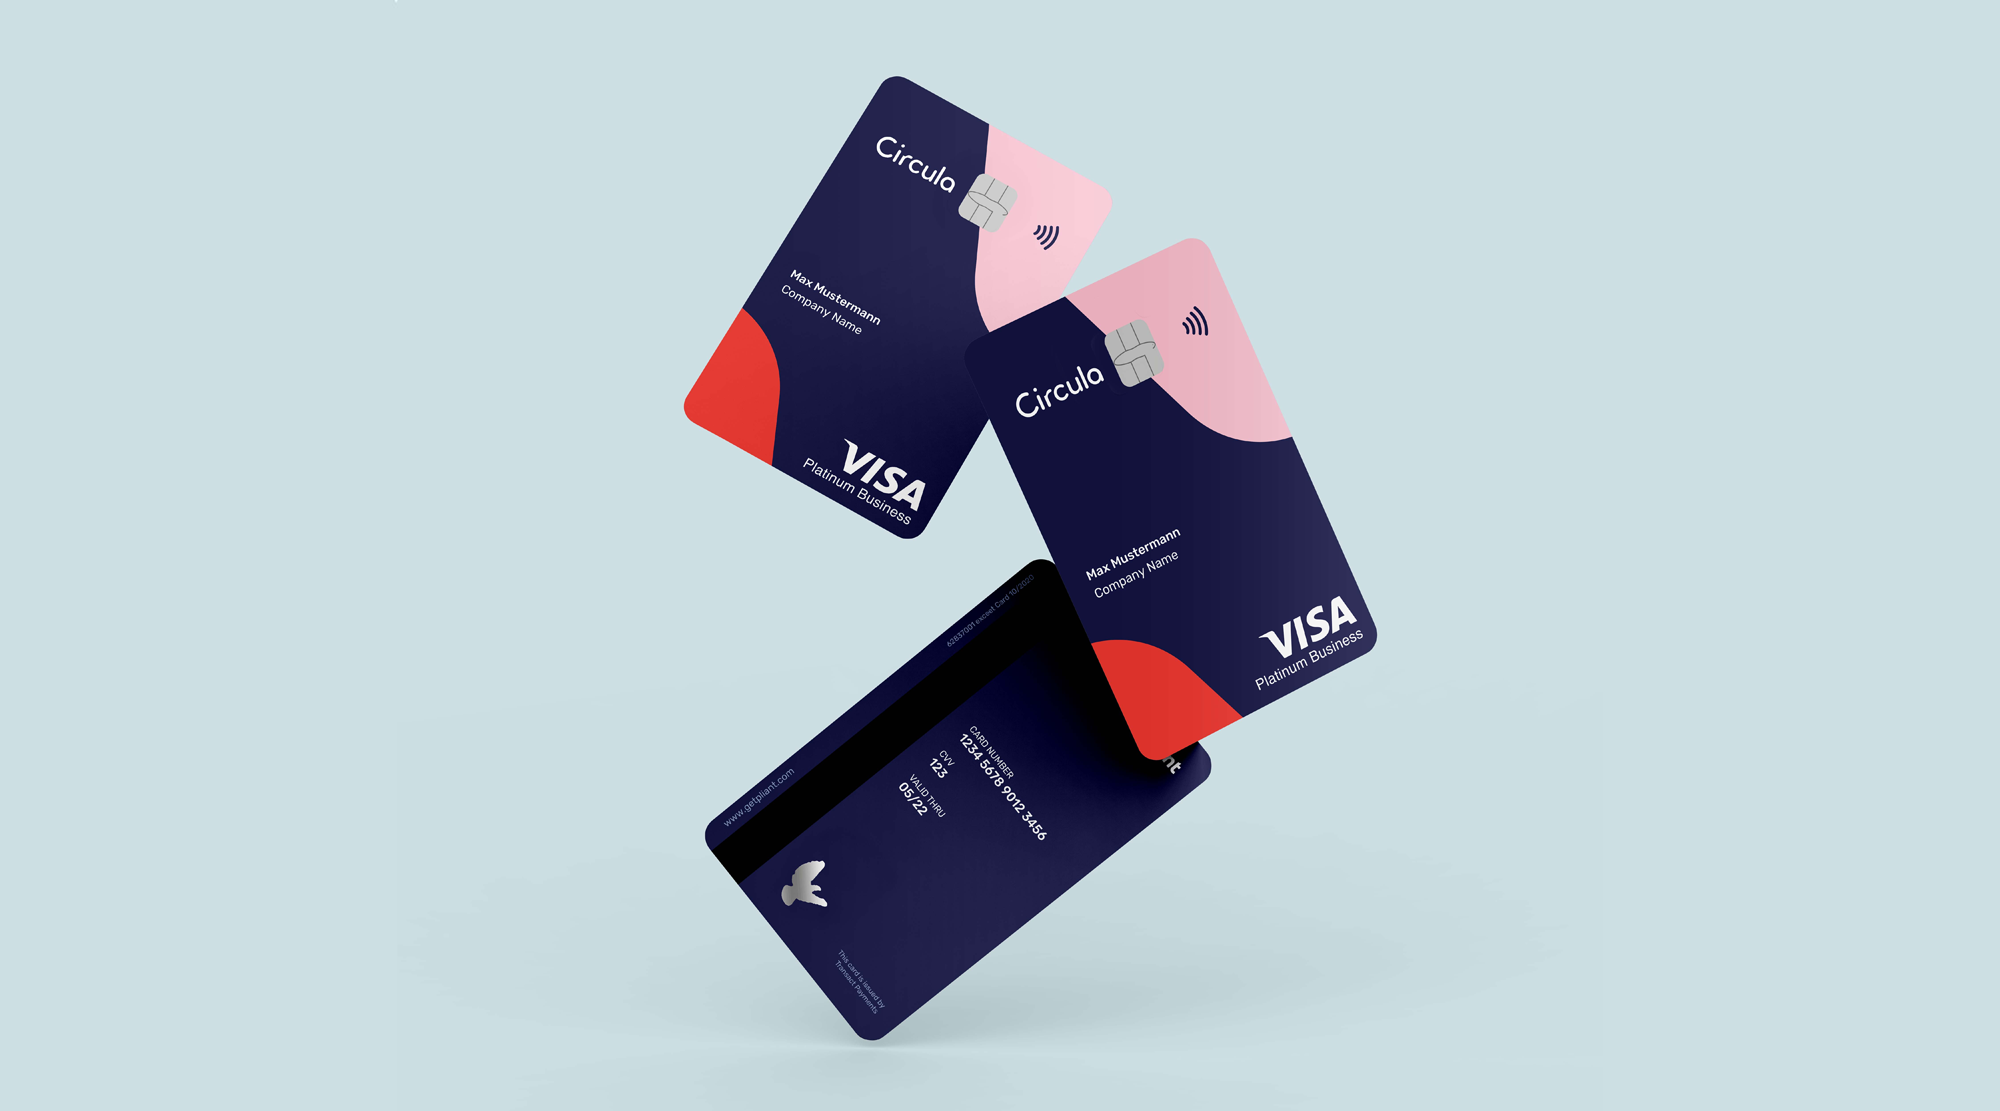 Circula und pliant starten Kooperation für intelligente Firmenkreditkarte